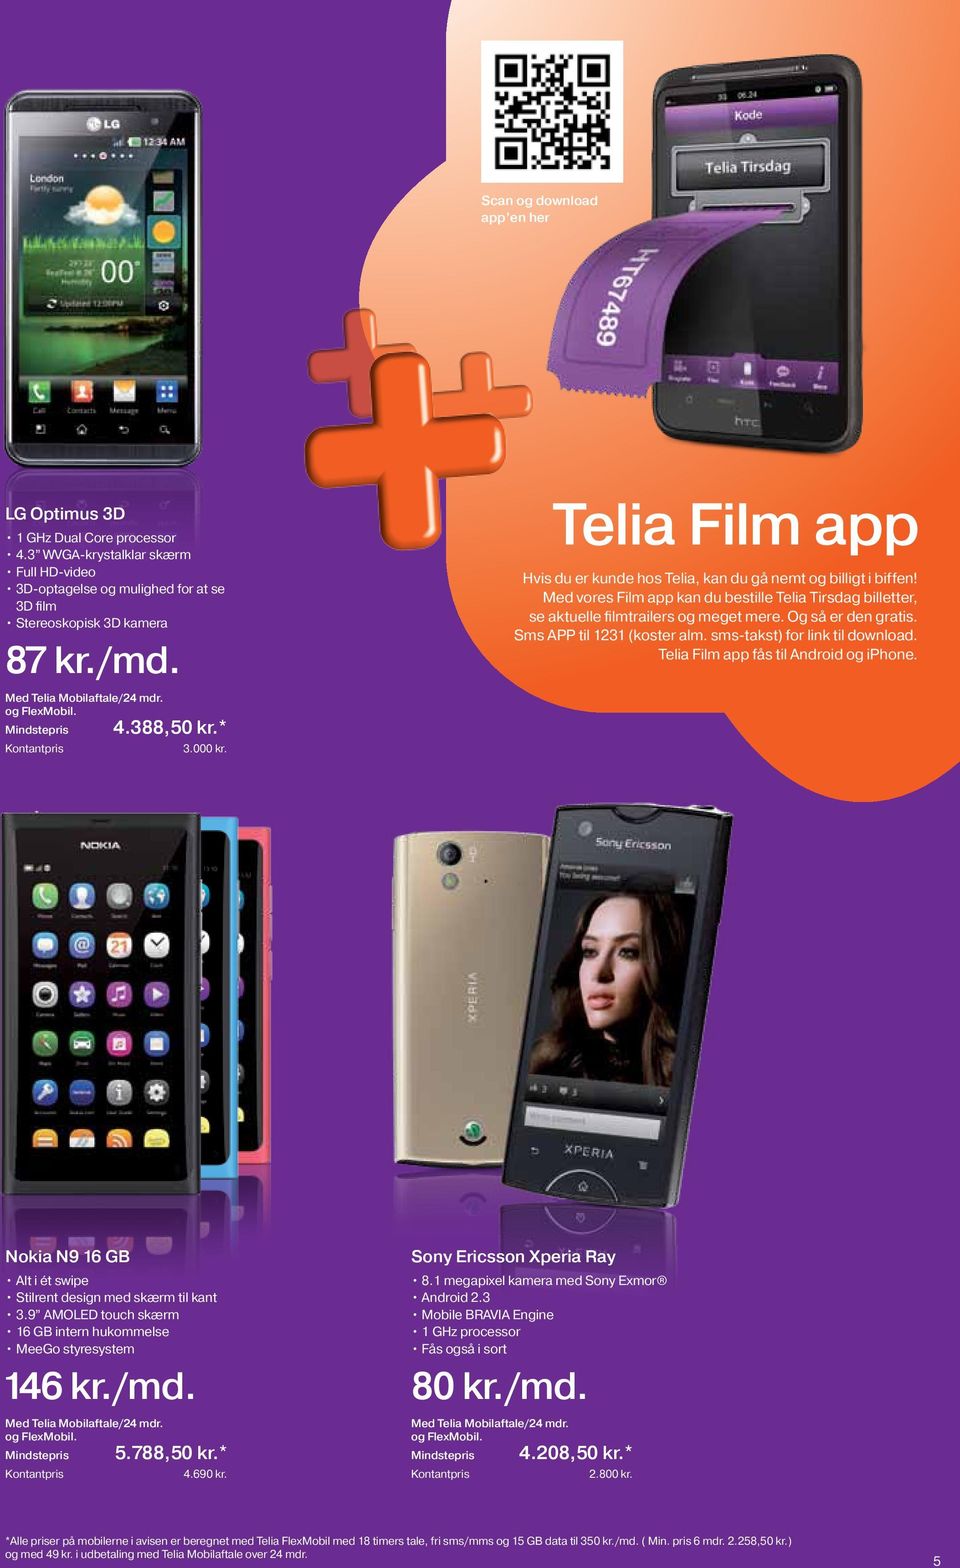 Og så er den gratis. Sms APP til 1231 (koster alm. sms-takst) for link til download. Telia Film app fås til Android og iphone. Nokia N9 16 GB Alt i ét swipe Stilrent design med skærm til kant 3.